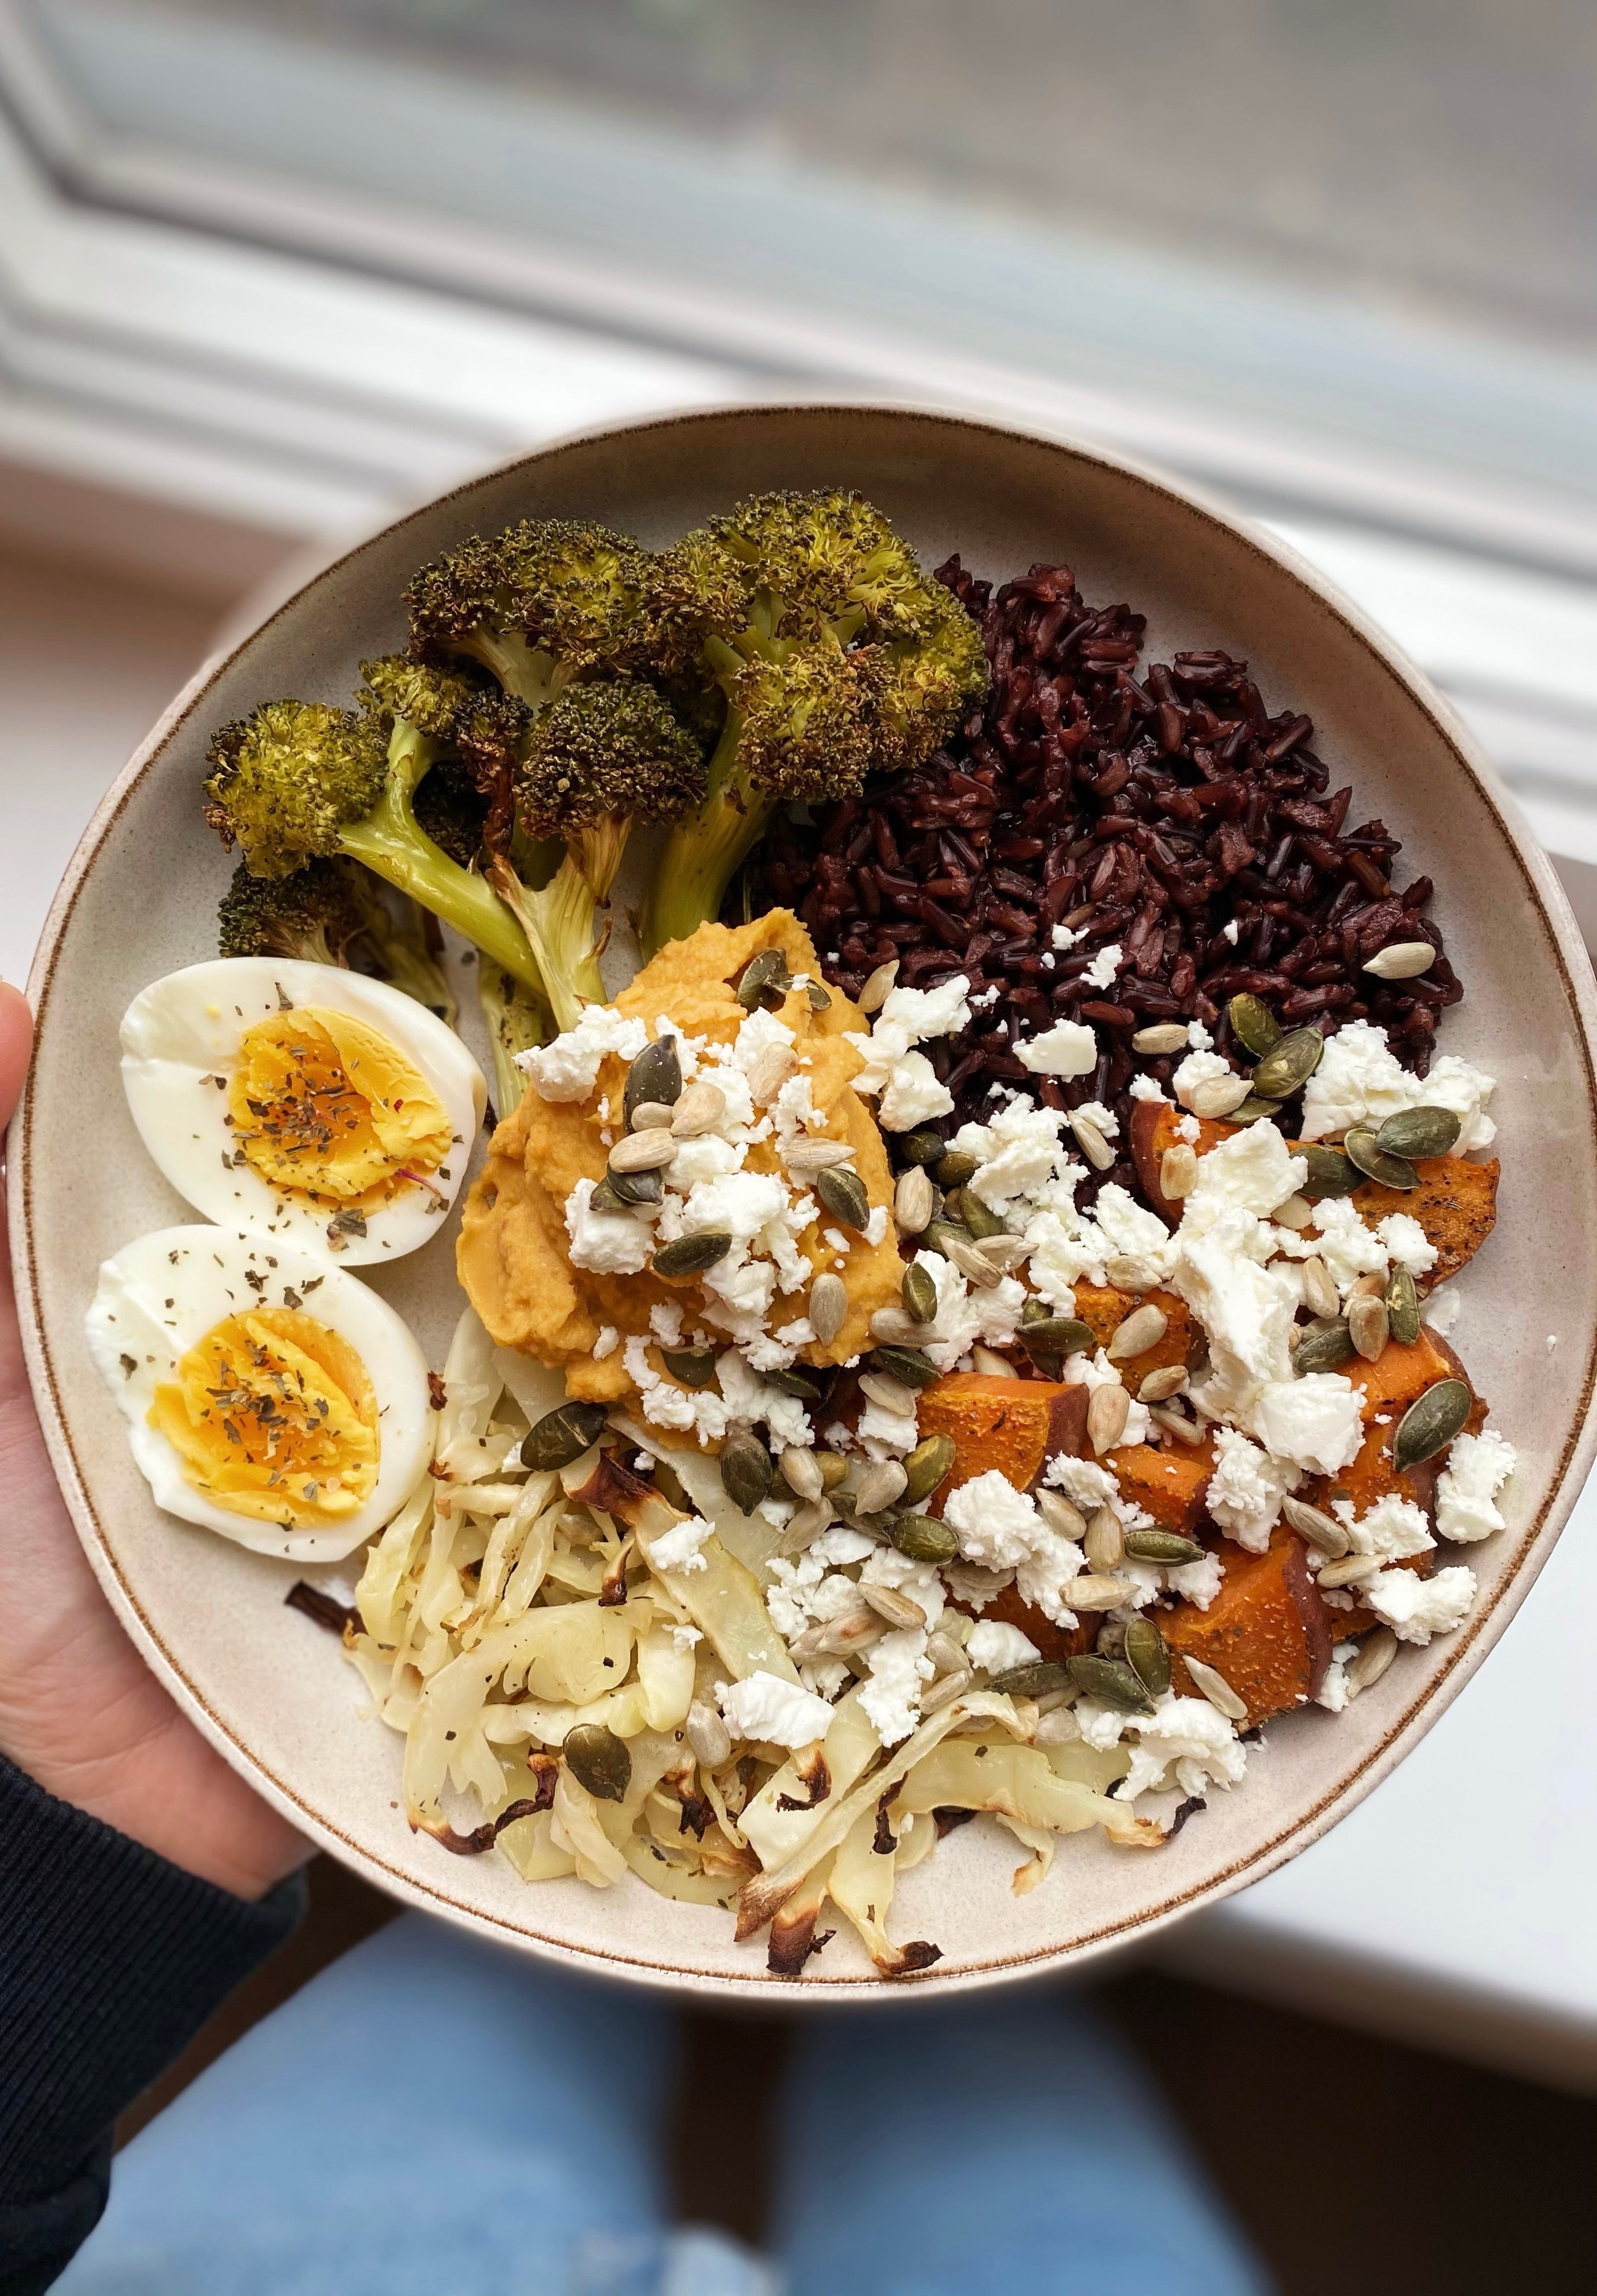 Sötpotatisbowl med svart ris, hummus, ugnsbakade grönsaker, fetaost och ägg - perfekt måltid för menscykel i balans